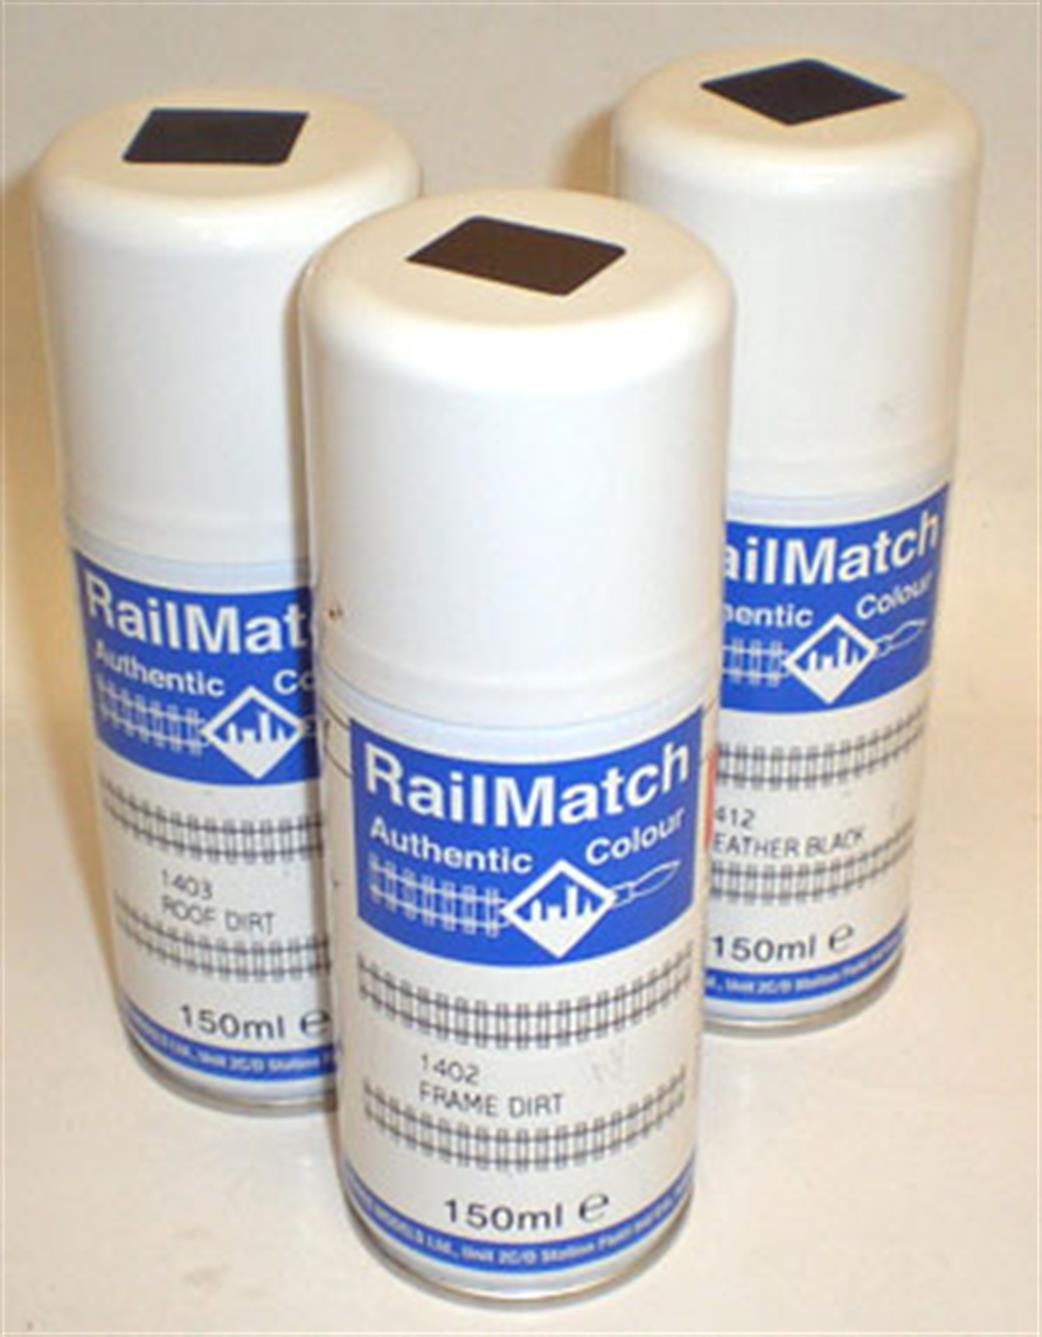 Railmatch  RM1403 Roof Dirt 150ml Enamel Aerosol